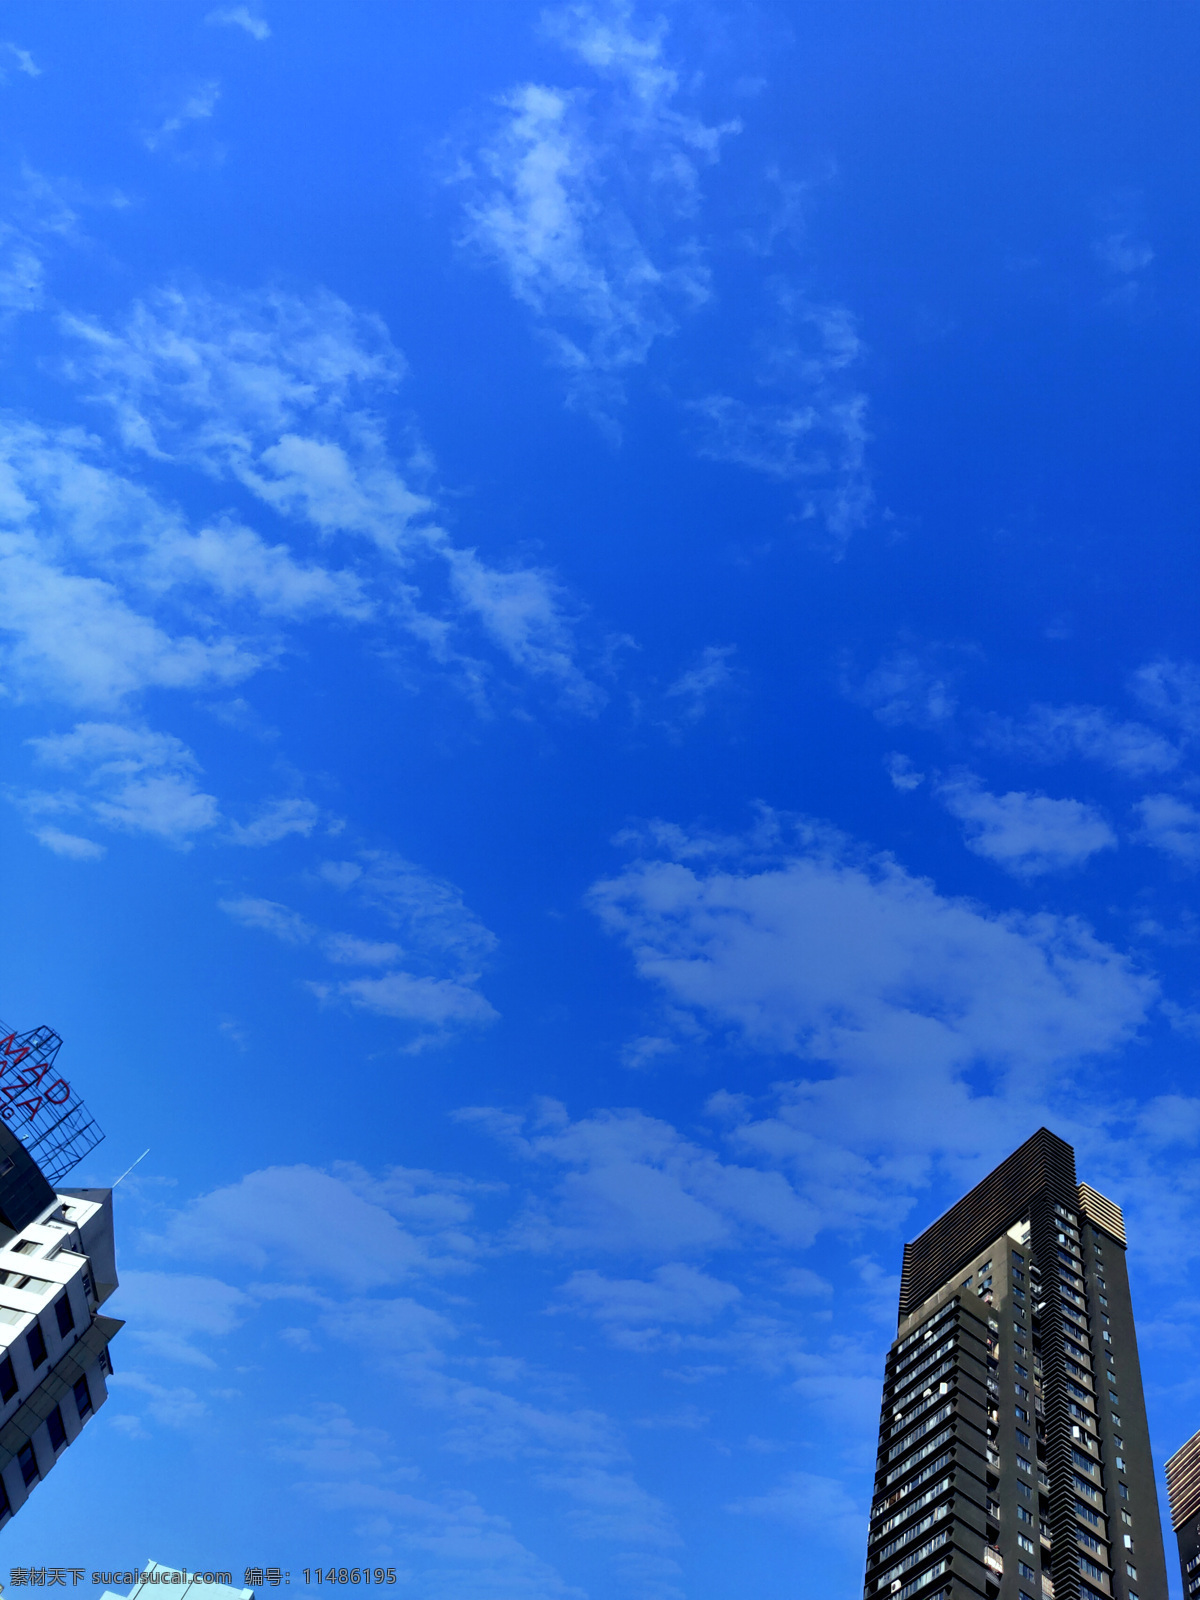 蓝天 白云 建筑 高楼大厦 蓝天白云 蓝天素材 白云素材 天空 商业楼 建筑园林 建筑摄影